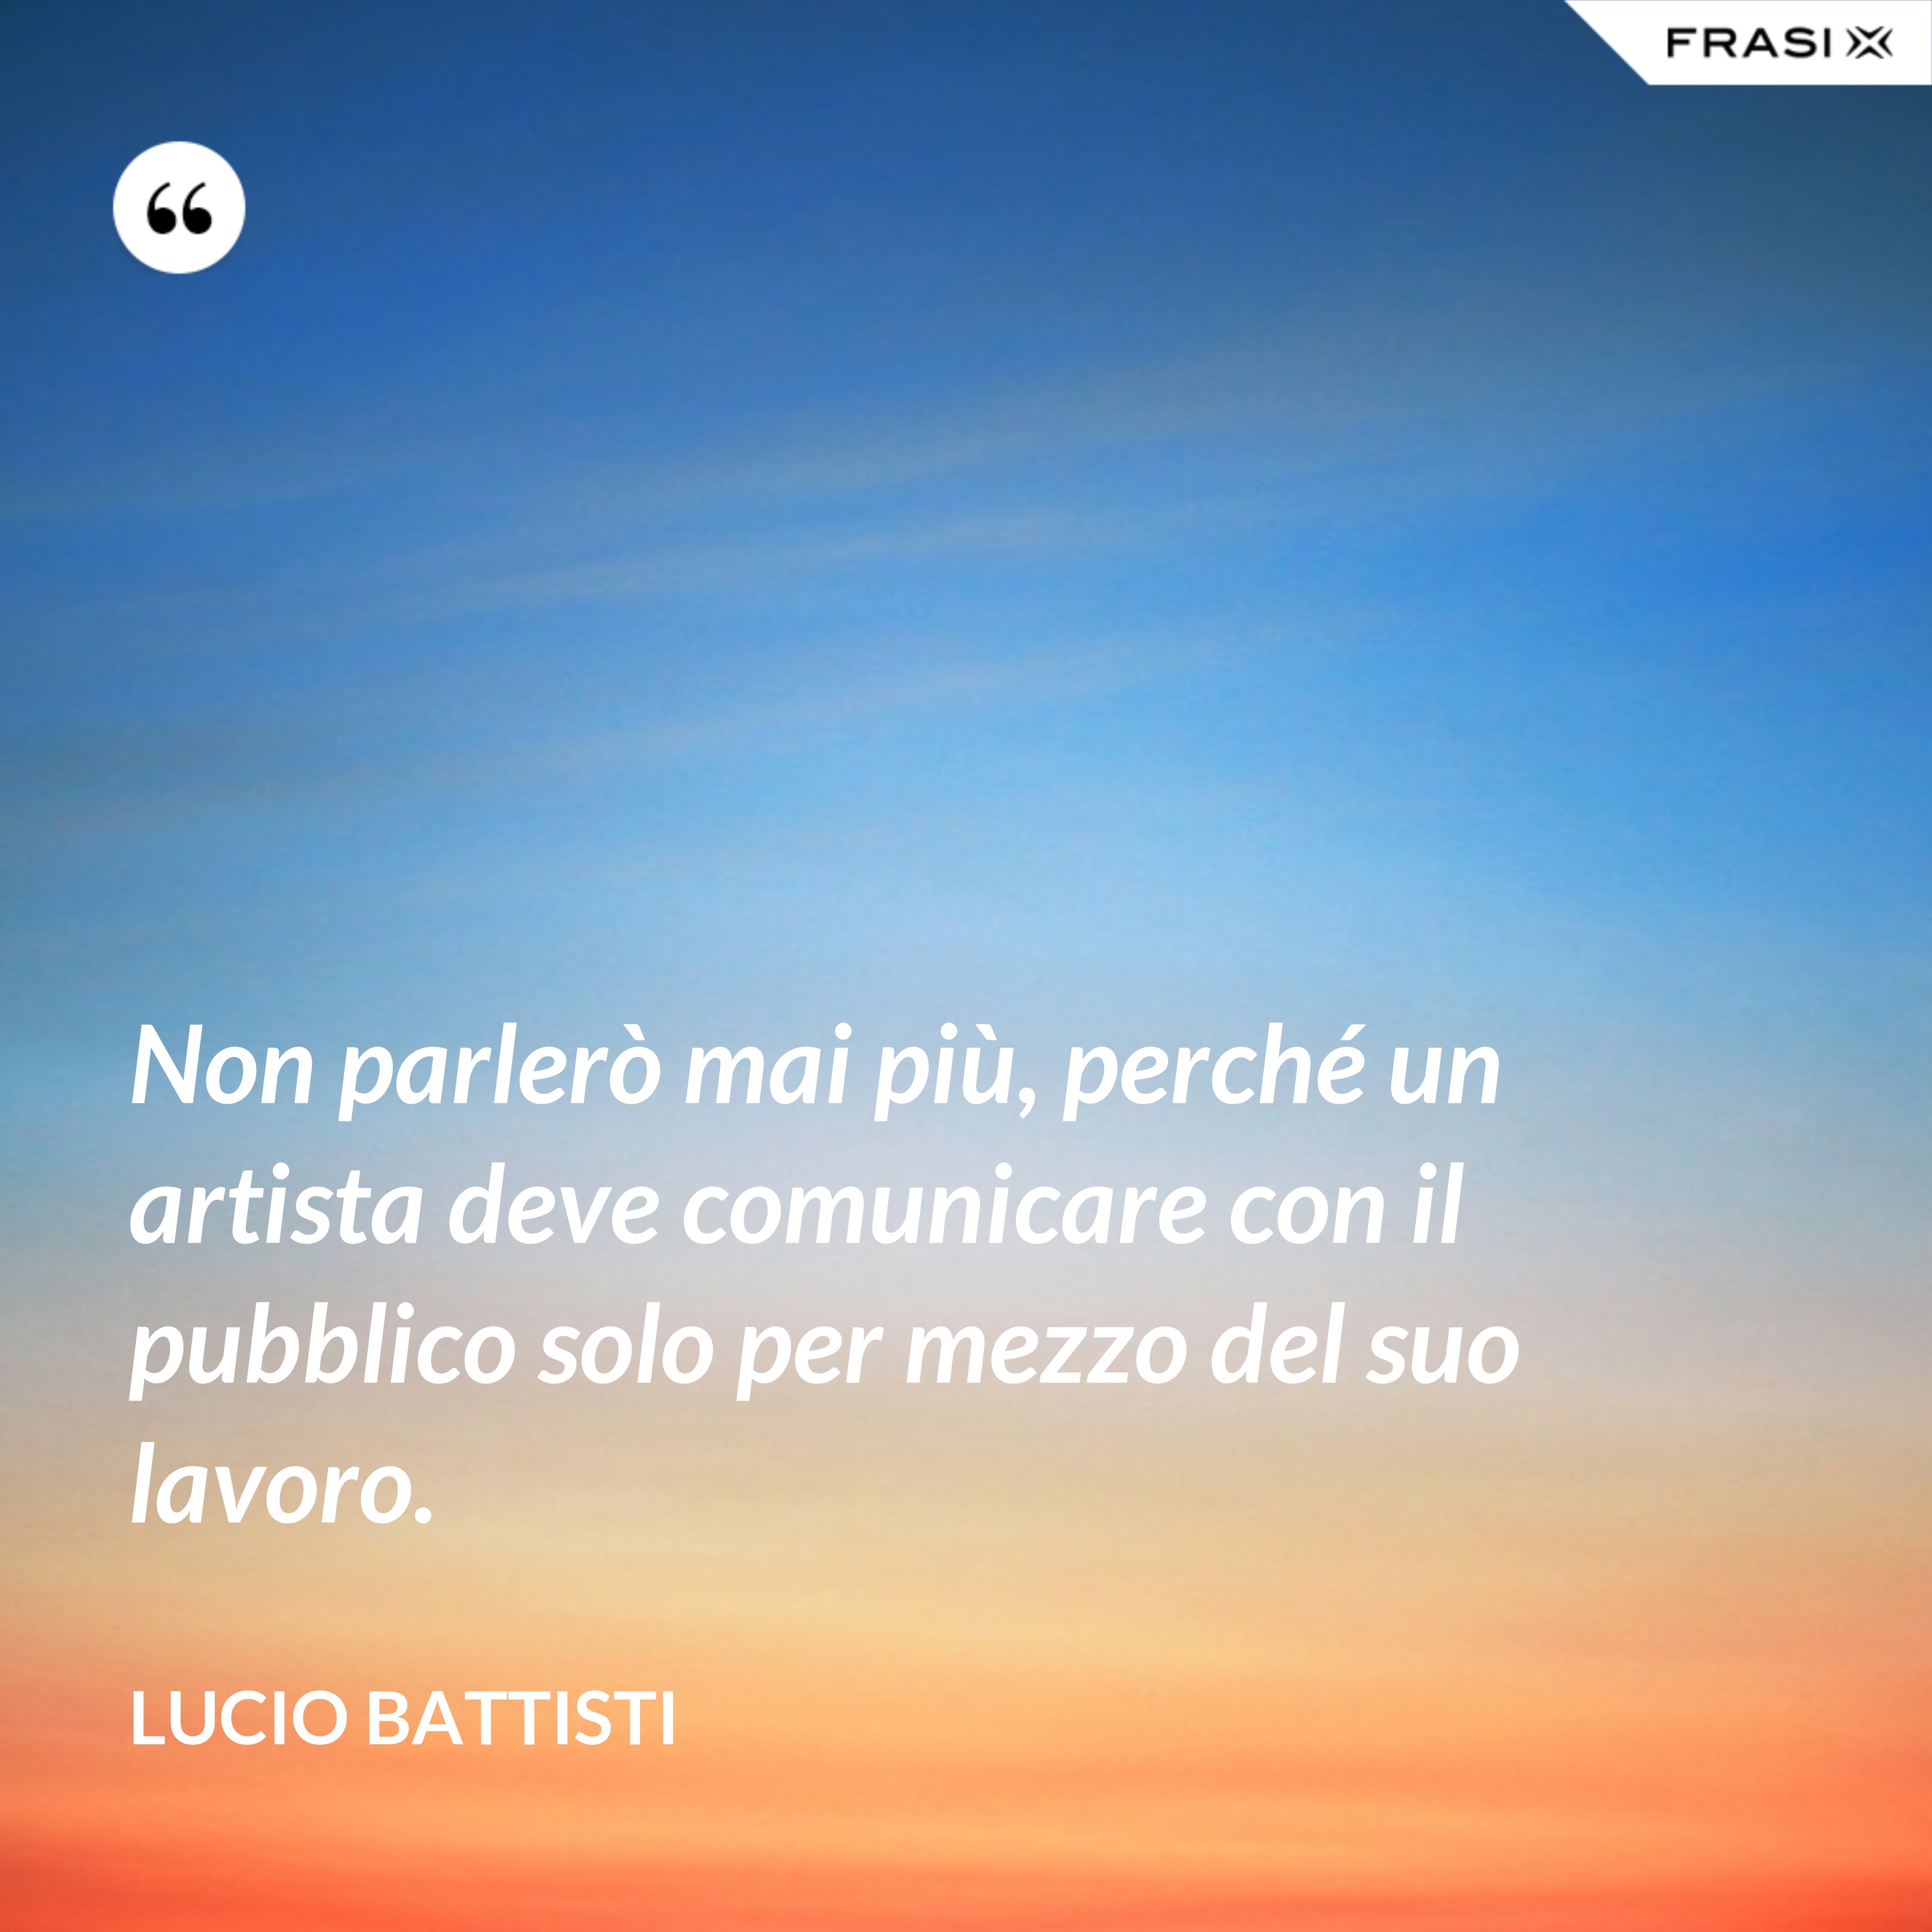 Non parlerò mai più, perché un artista deve comunicare con il pubblico solo per mezzo del suo lavoro. - Lucio Battisti